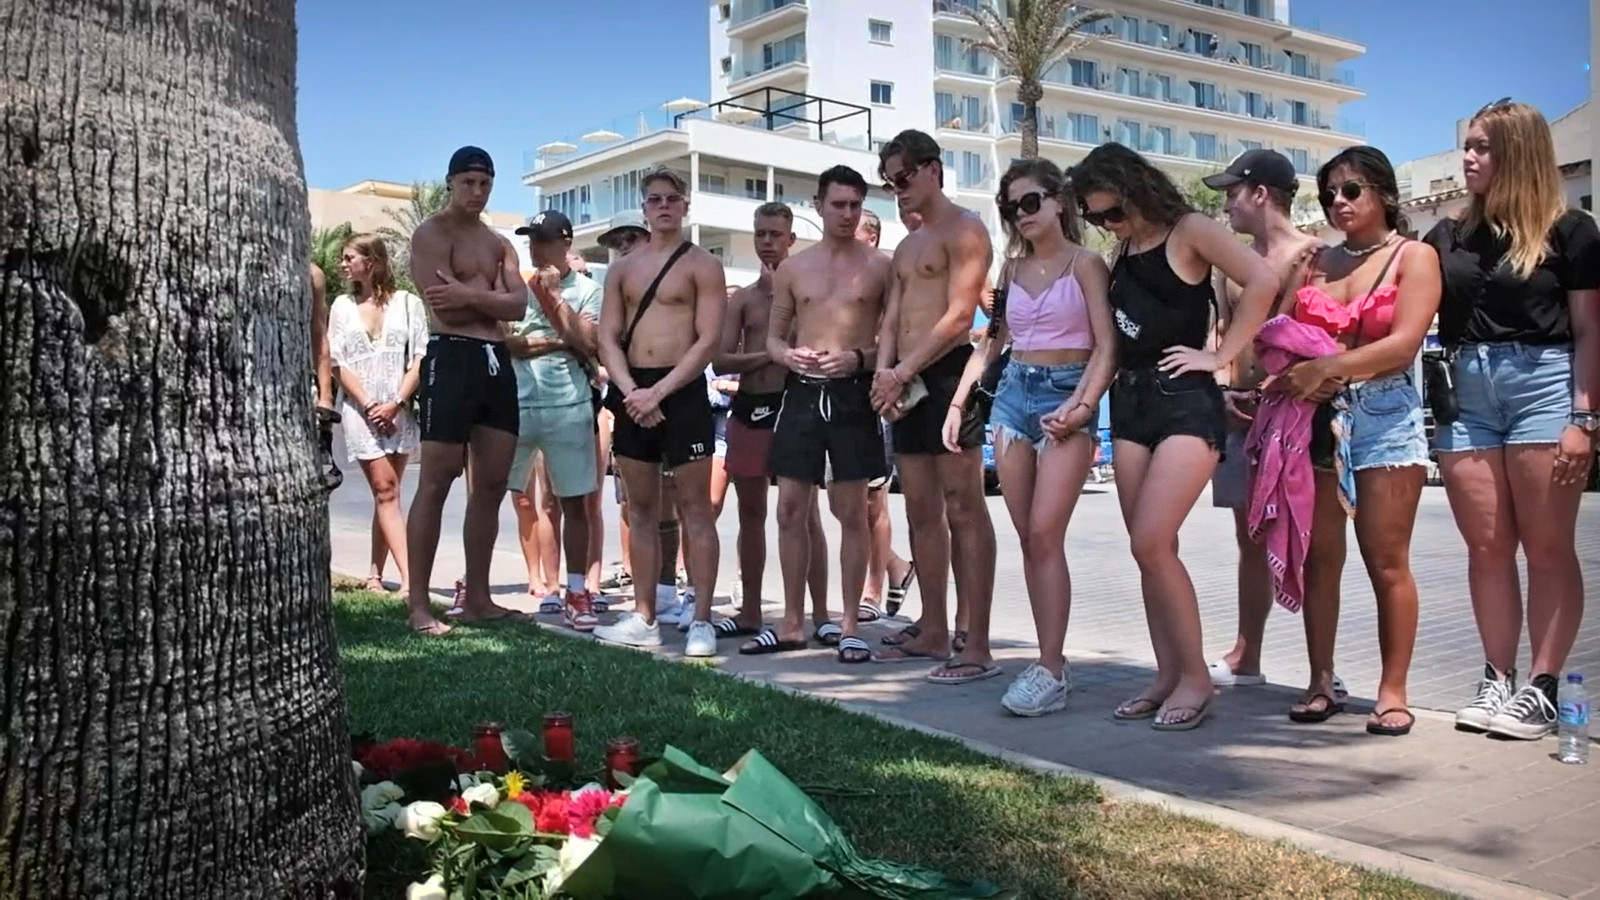 Jongeren leggen bloemen op Mallorca voor de overleden Carlo op de plek waar hij werd aangevallen.